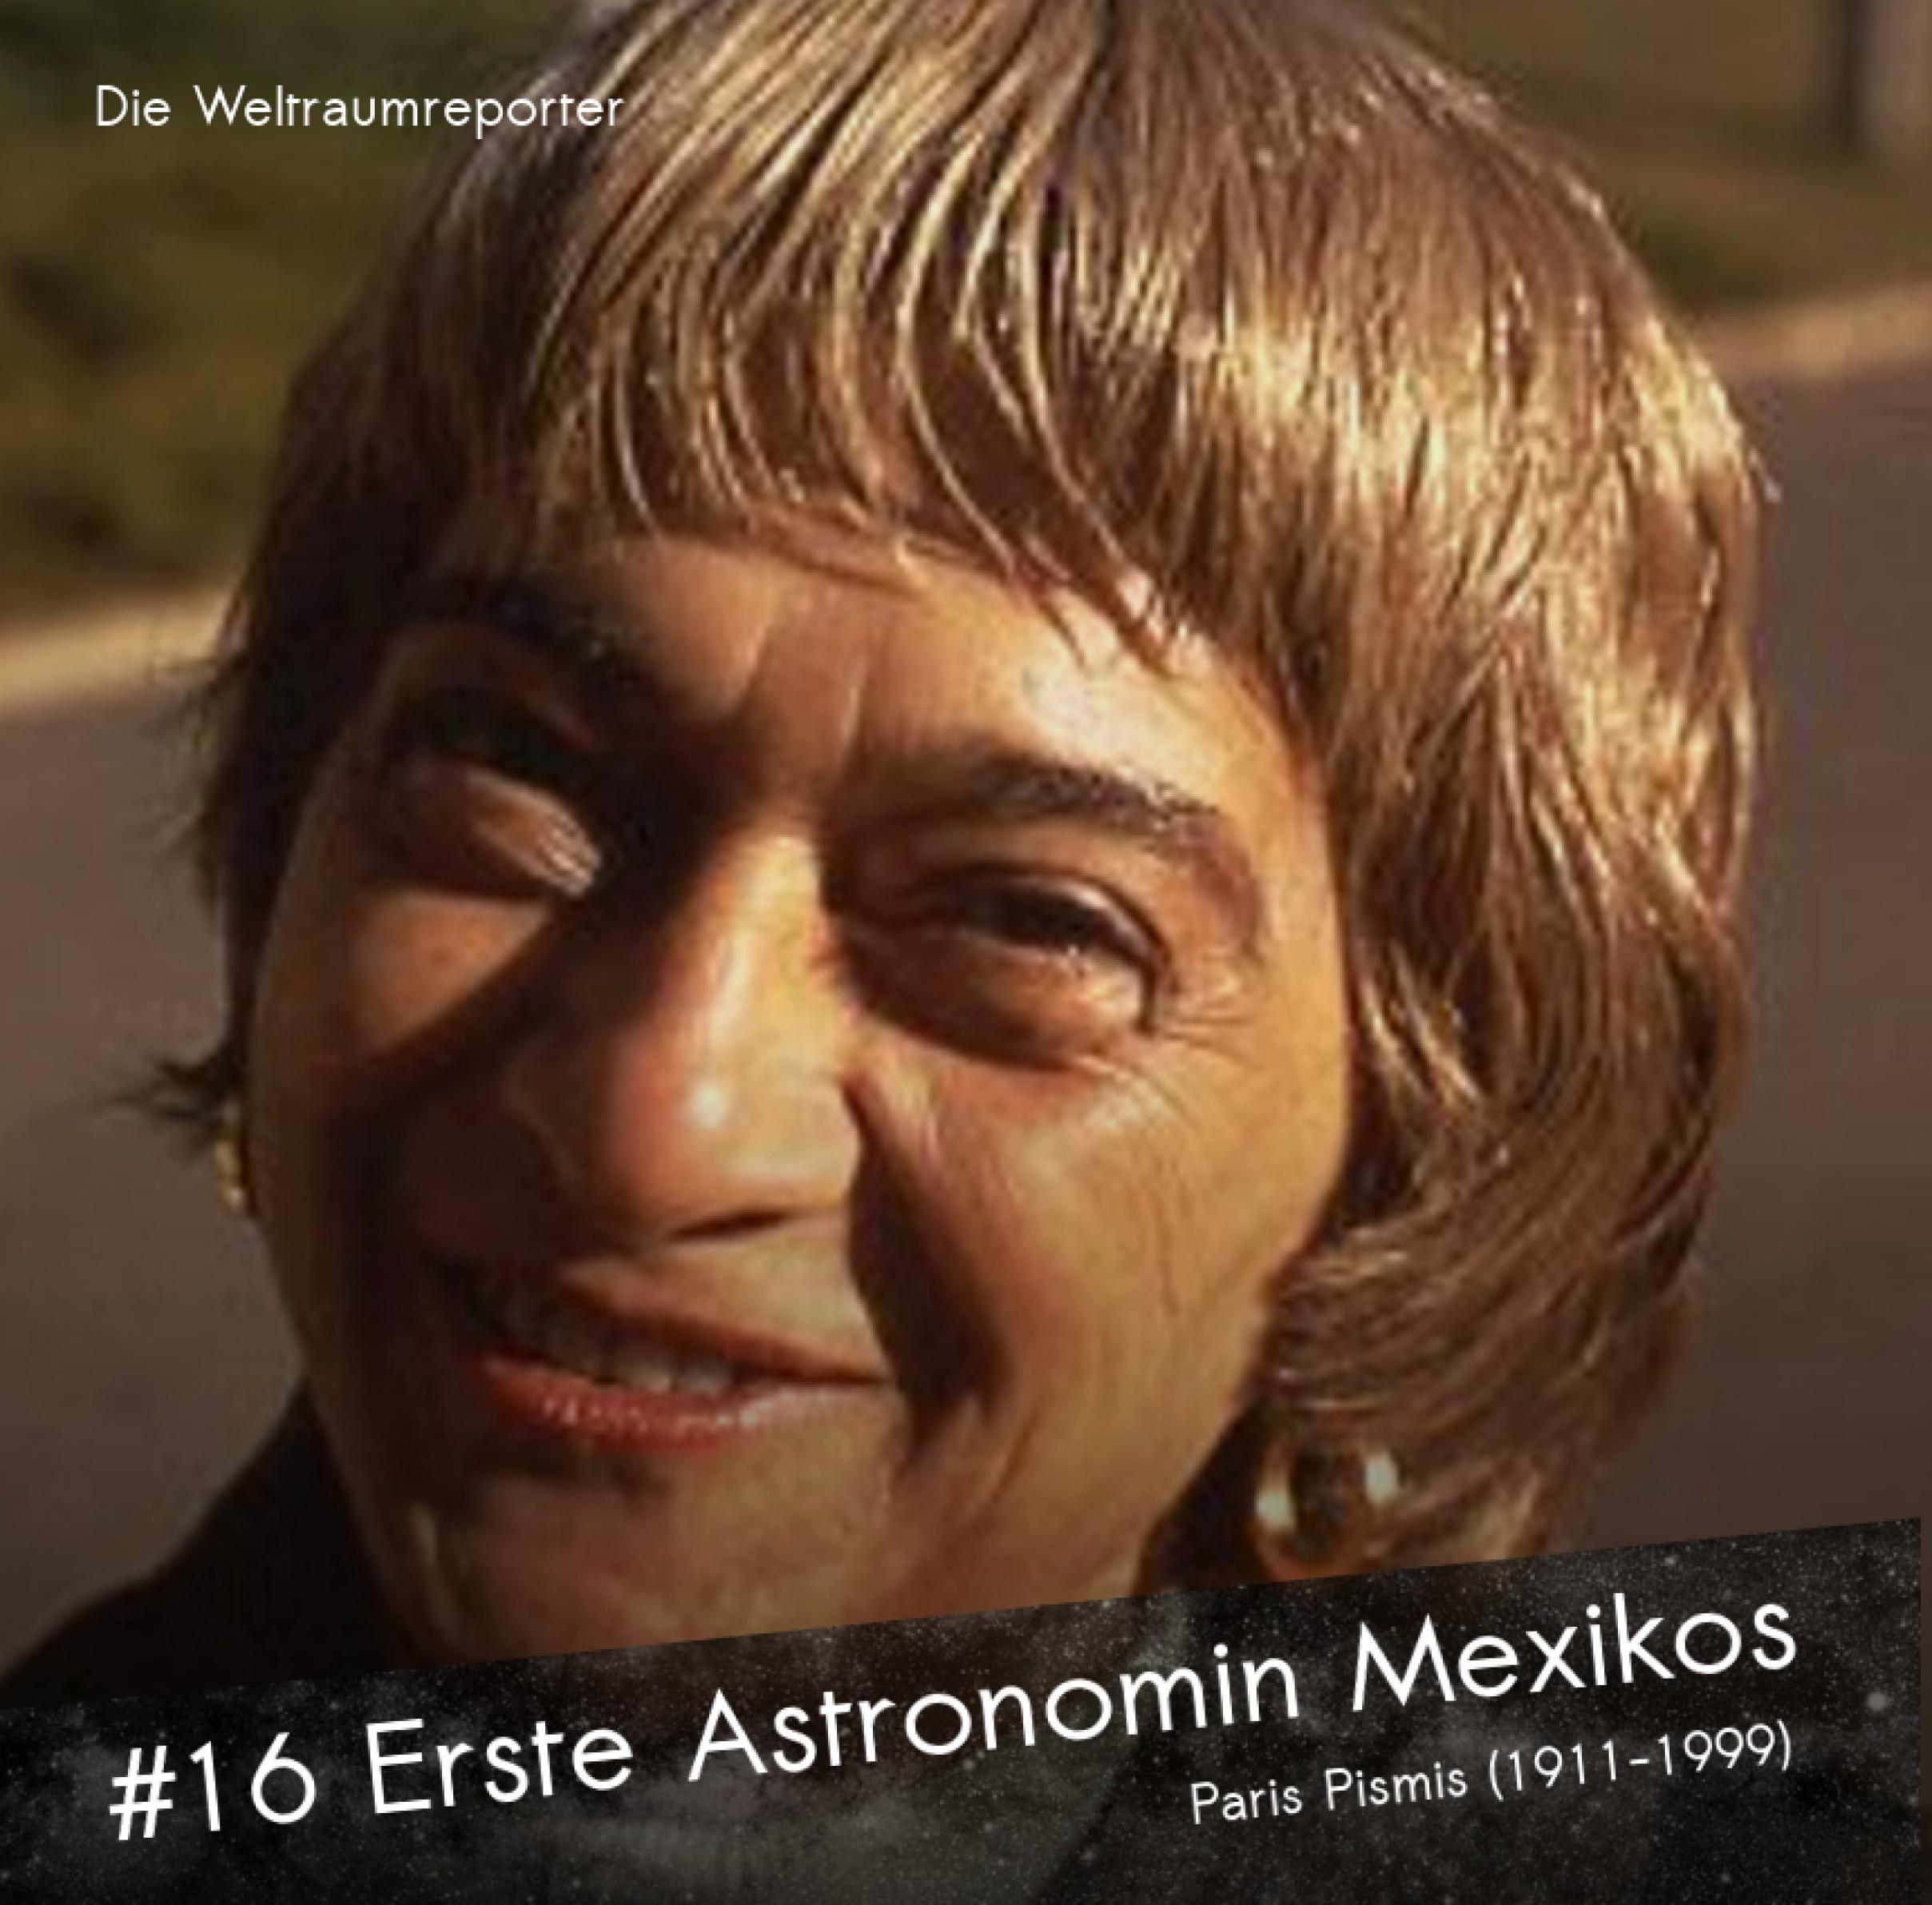 Eine ältere Dame mit ringförmigengoldenen Ohrringen blickt lächelnd in die Kamera: Paris Pismis, die erste Astronomin Mexikos